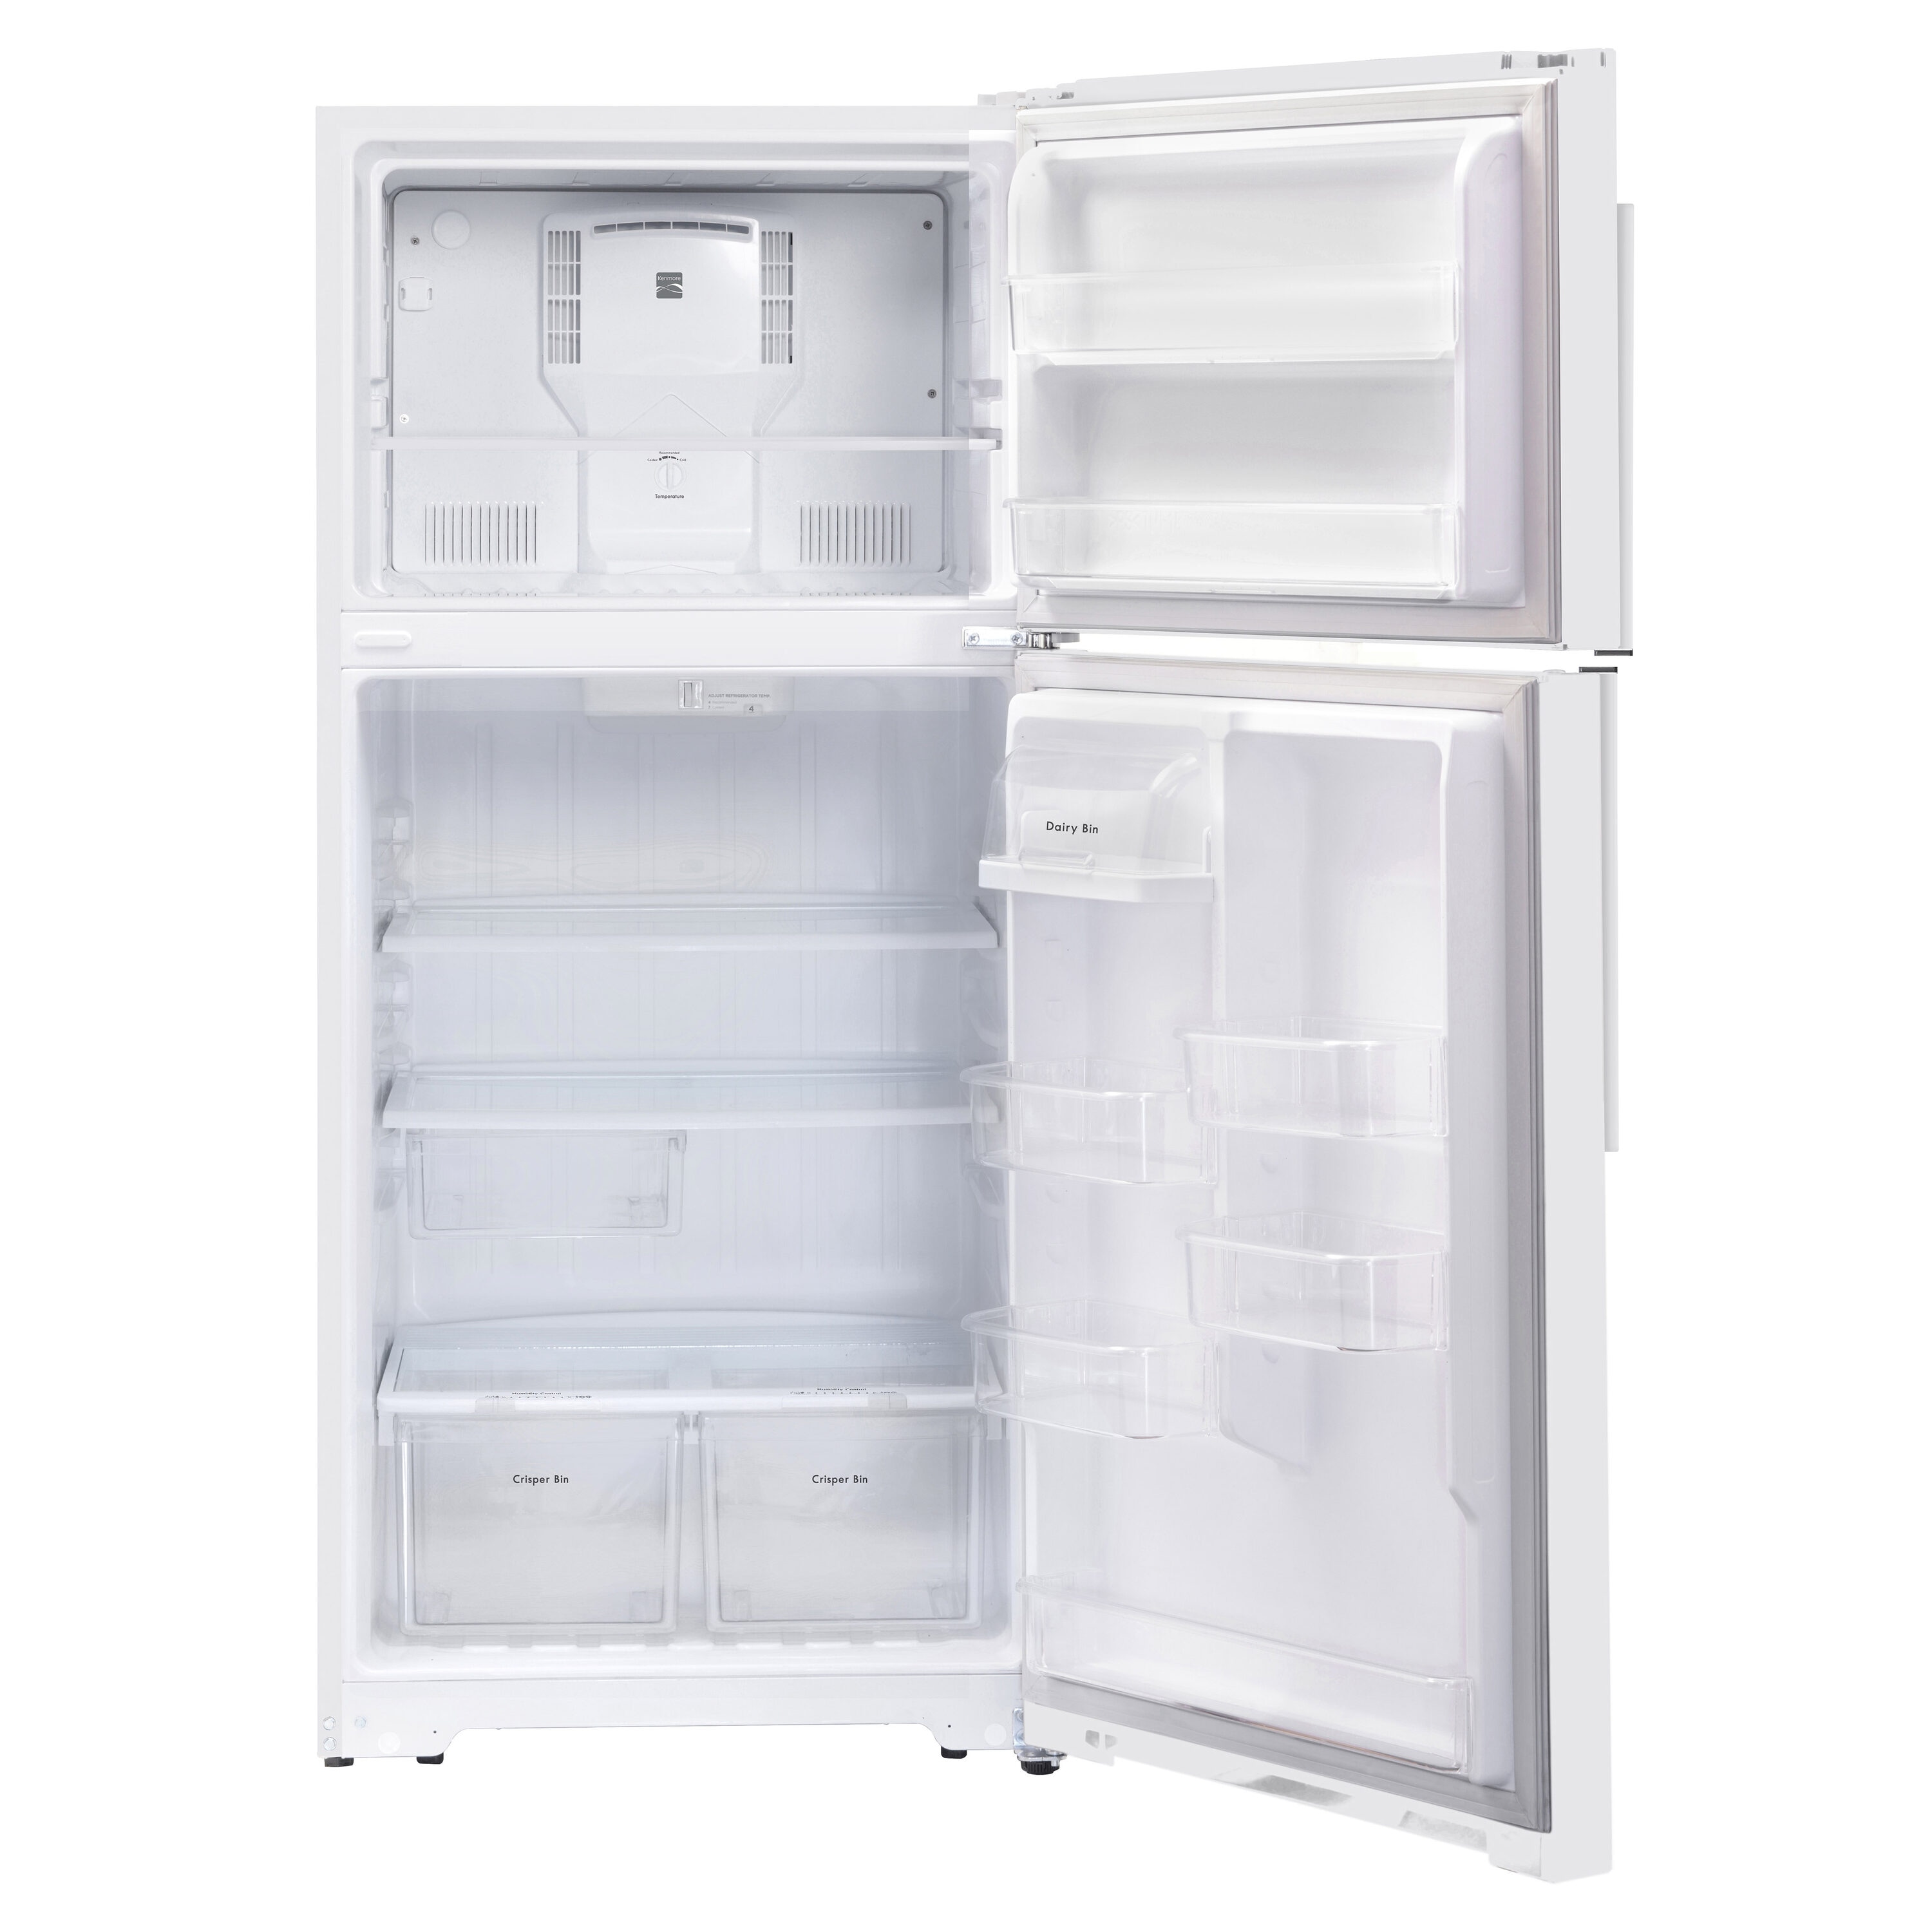 Kenmore 18.3-Cu ft Top-Freezer Refrigerator (White) ENERGY STAR in the Top-Freezer Refrigerators department at Lowes.com